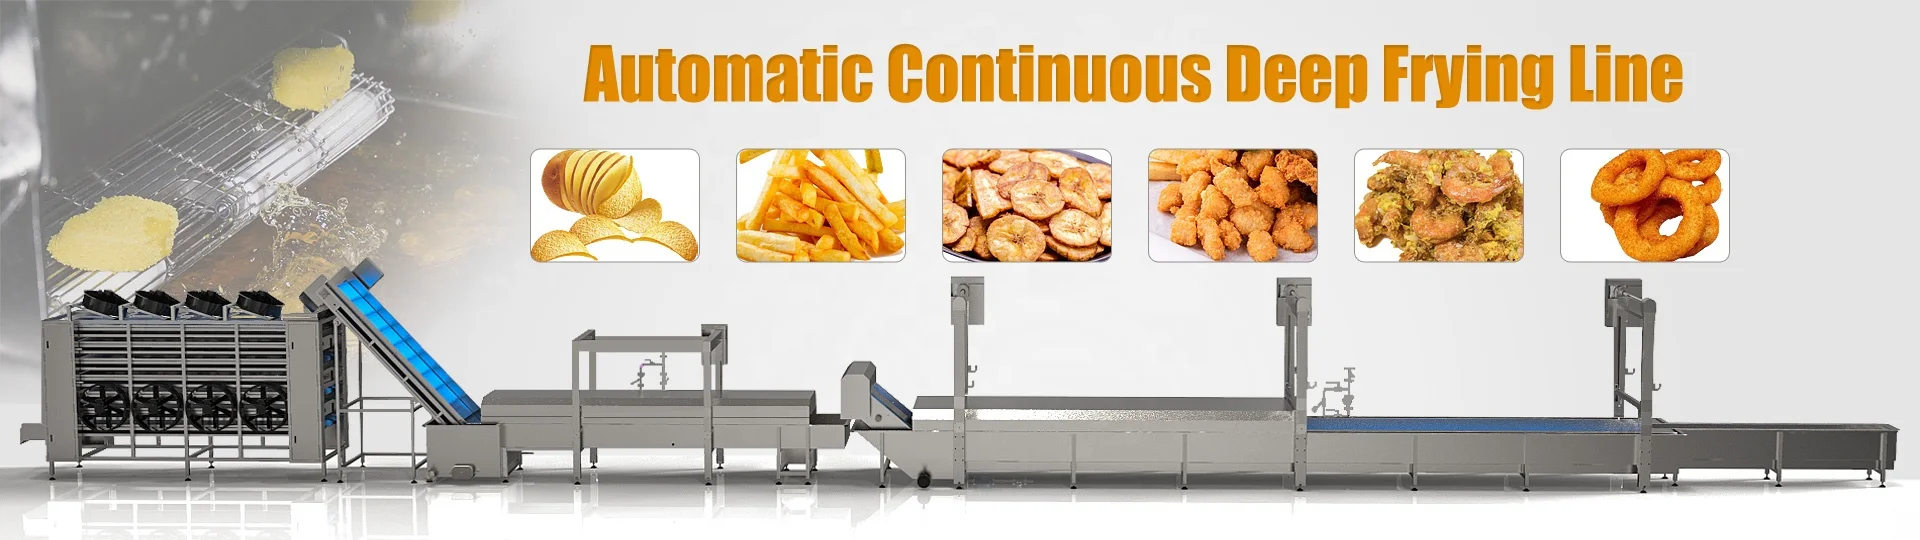 Прямая Заводская линия по производству сухого картофеля, автоматическая линия по производству картофельных чипов